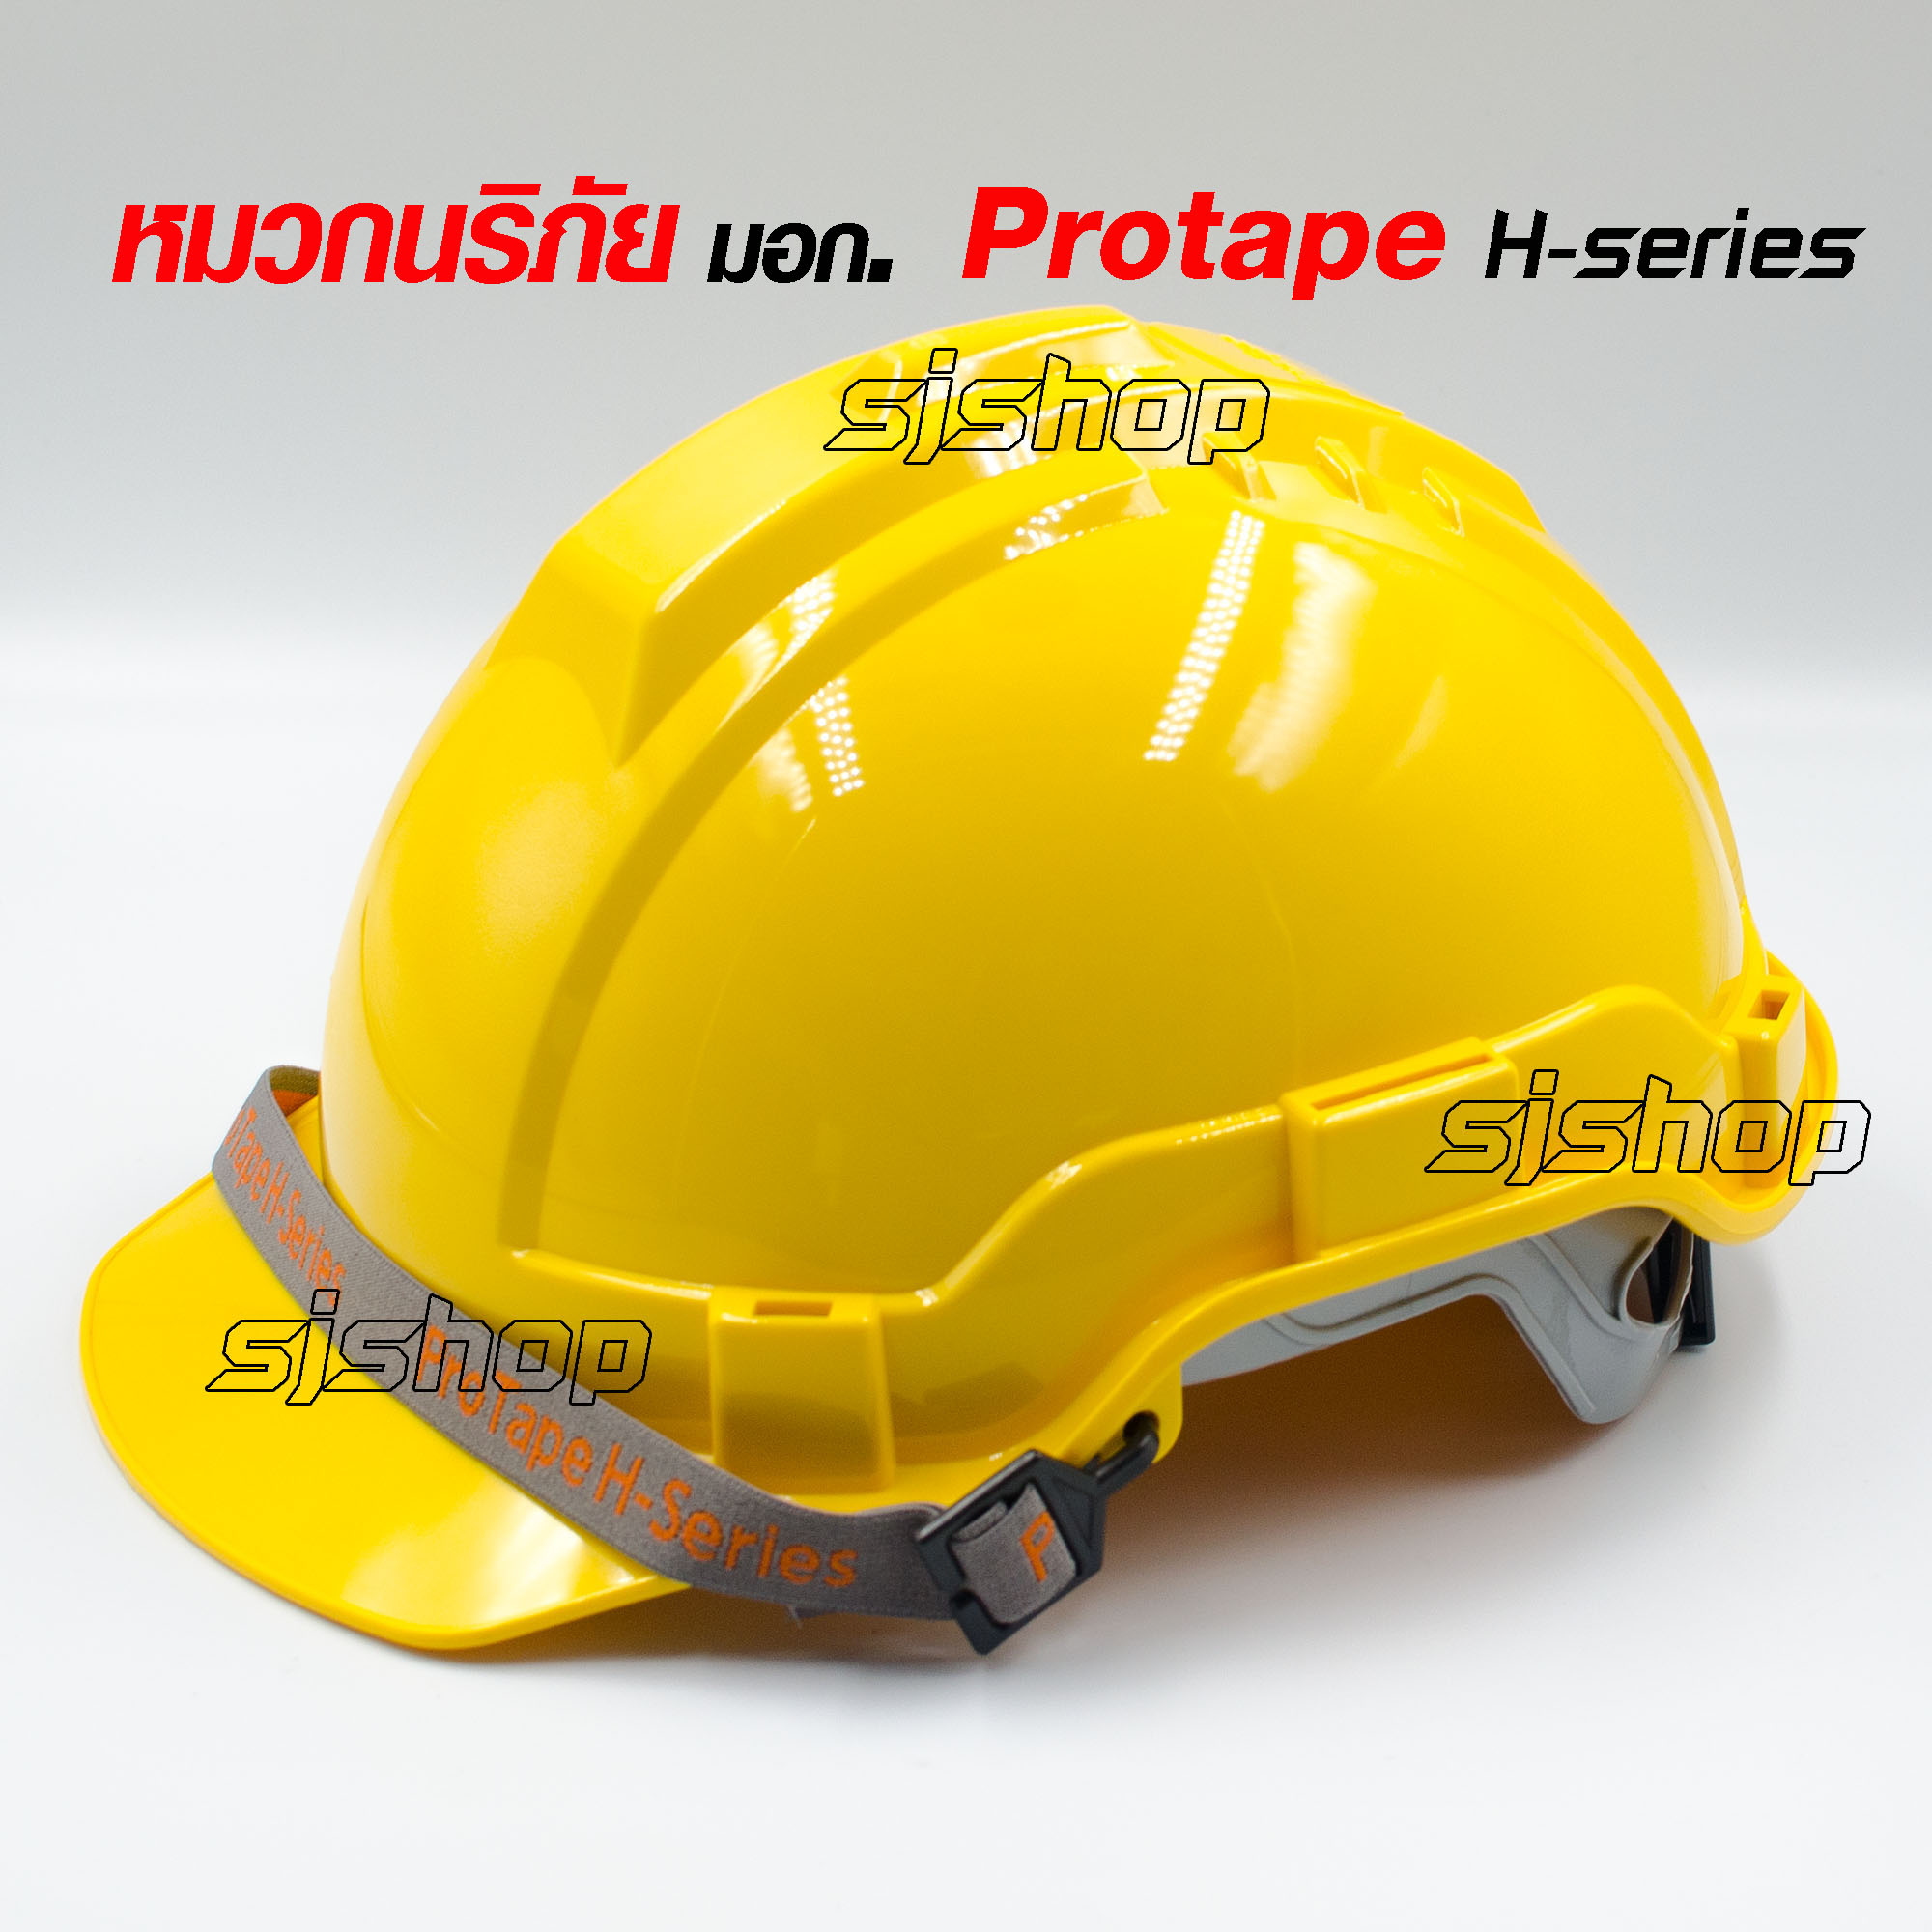 PROTAPE H-series สีเหลือง หมวกนิรภัย หมวกเซฟตี้ หมวกวิศวะ หมวกก่อสร้าง หมวกกันกระแทก แบบปรับหมุน สายรัดคางยางยืด SAFETY HELMET (High Impact ABS) น้ำหนักเบา แข็งแรง ป้องกันแรงกระแทกสูง ผ่านการรับรองมาตรฐานความปลอยภัย มอก.368-2554 ผลิตในประเทศไทย